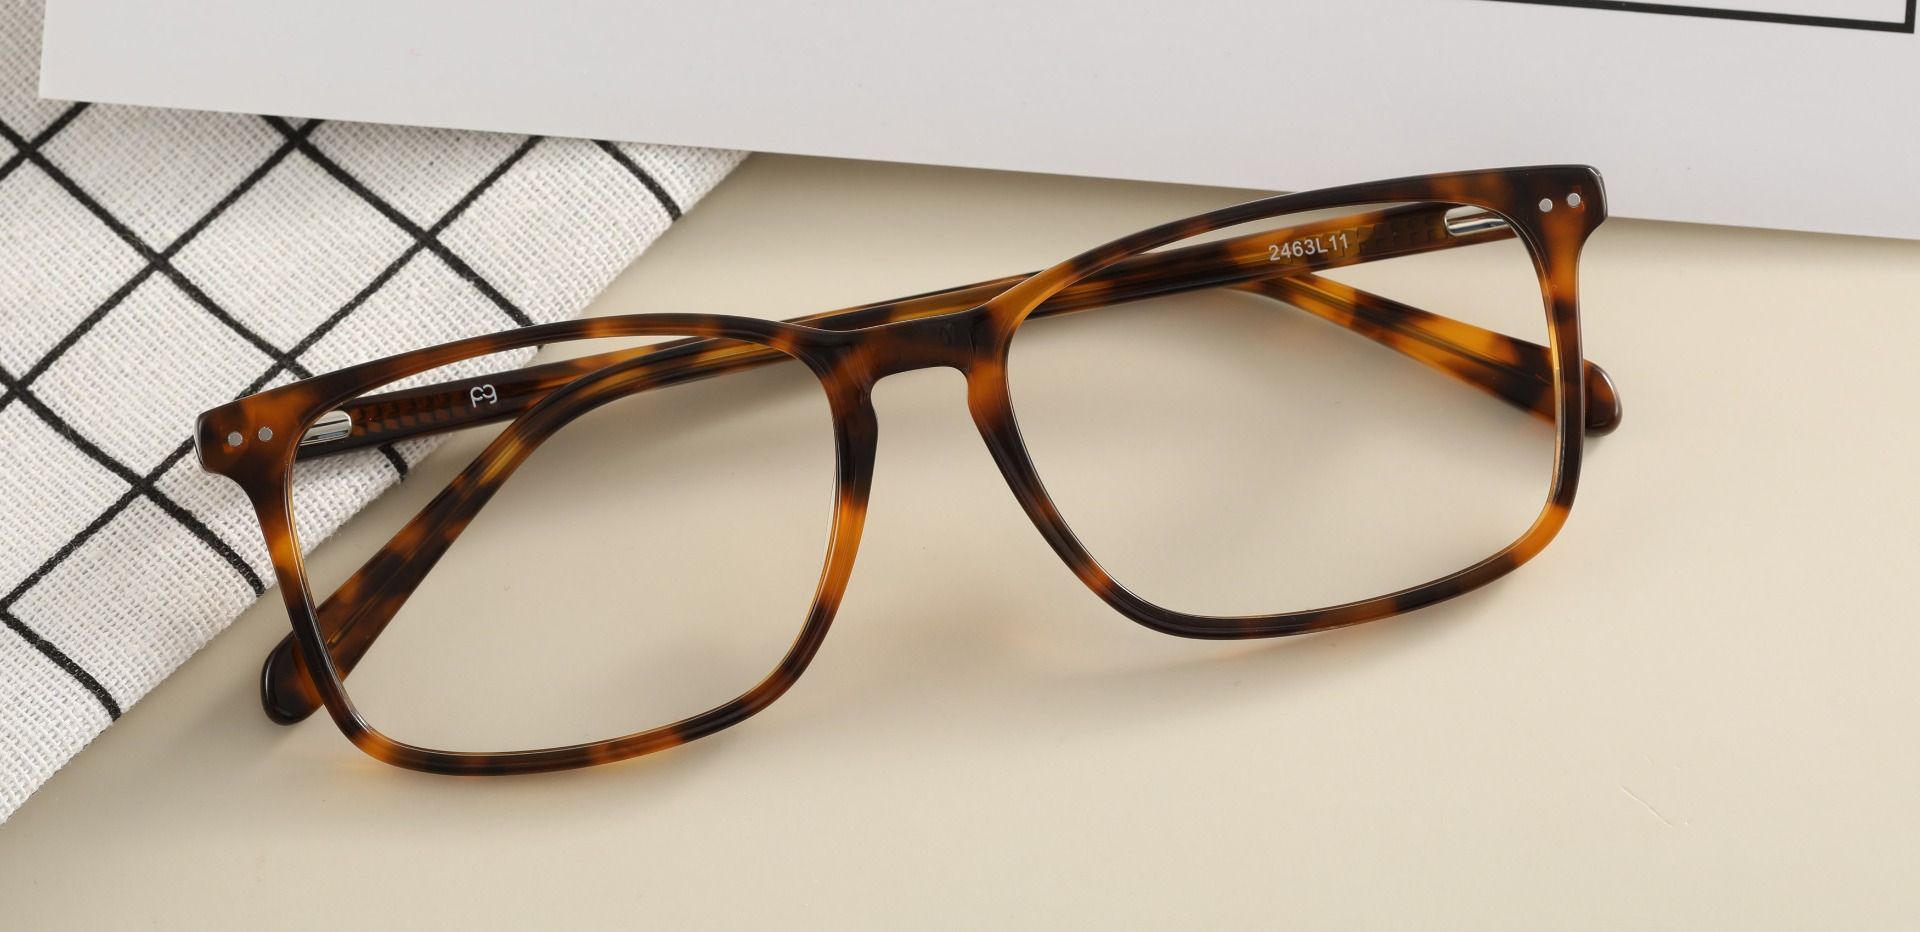 Finney Rectangle Lined Bifocal Glasses - Tortoise